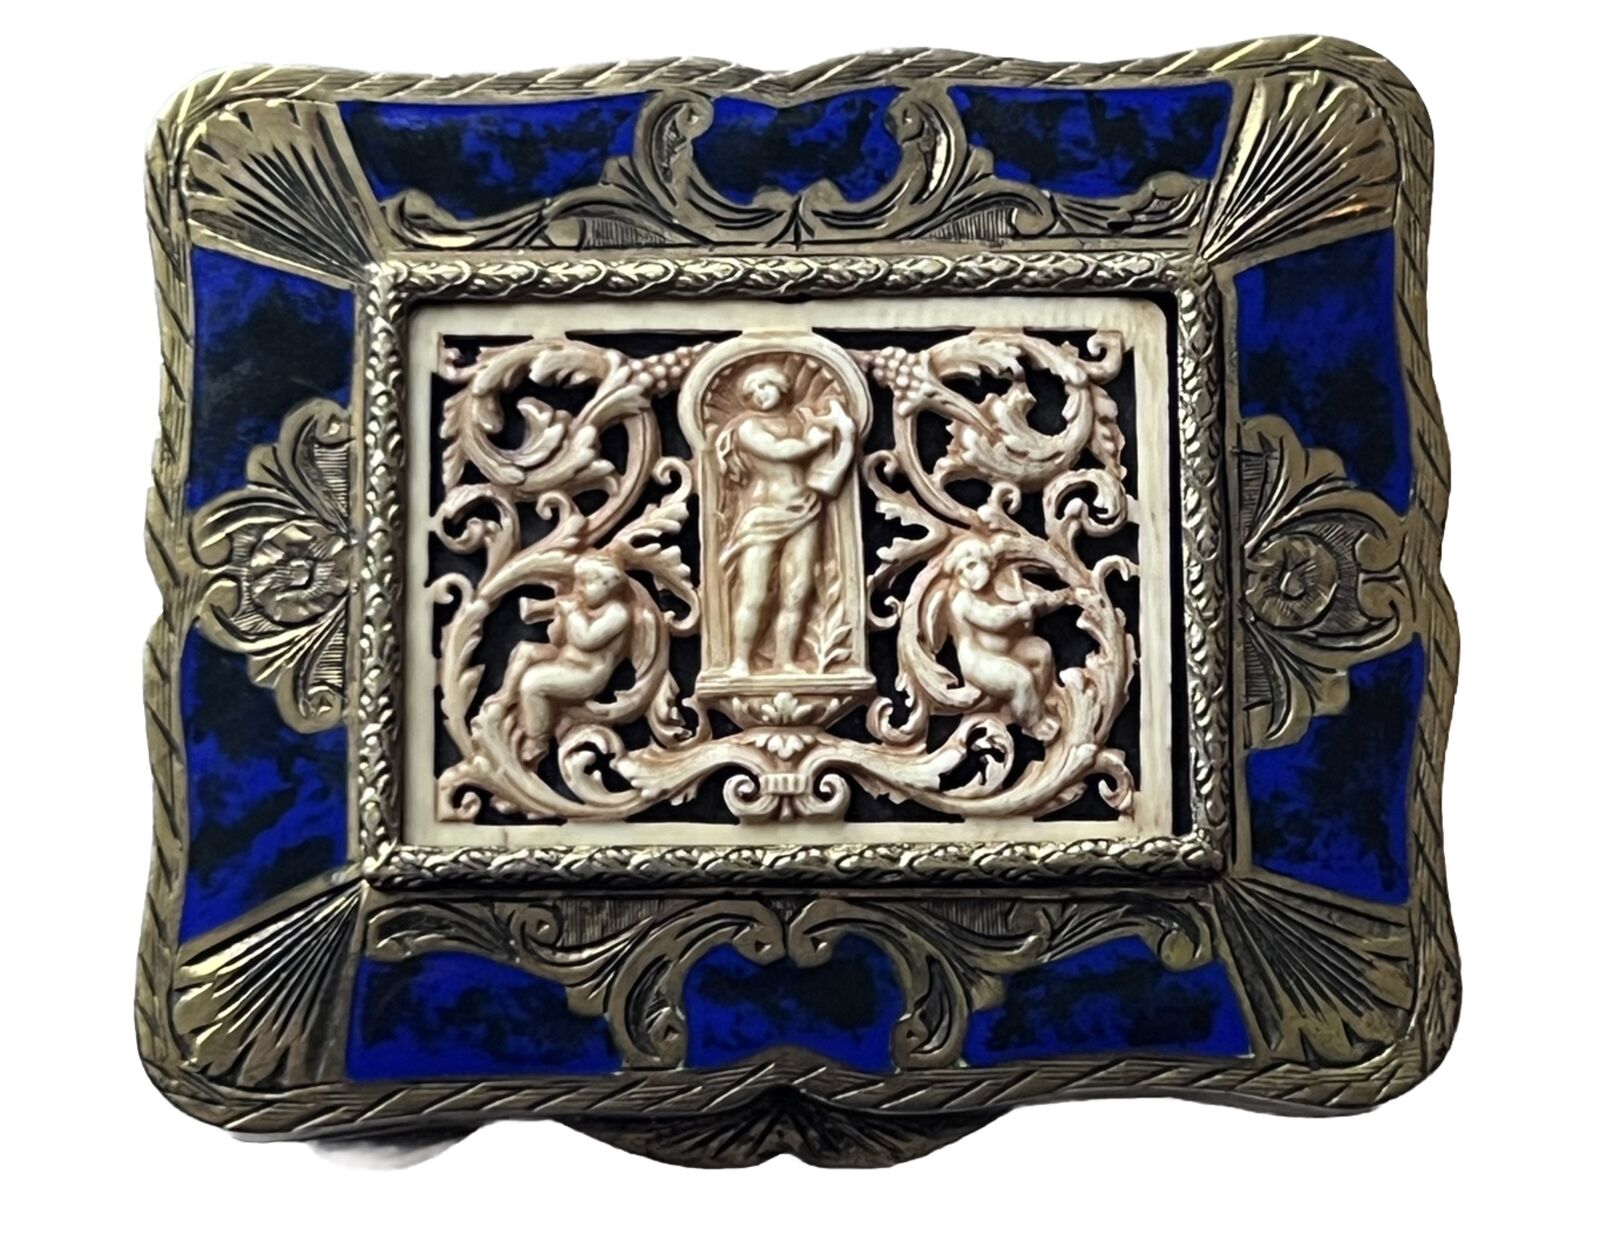 Antique Enamel Compact 800 Silver Carved Celluloid Cherubs Italian Art Nouveau